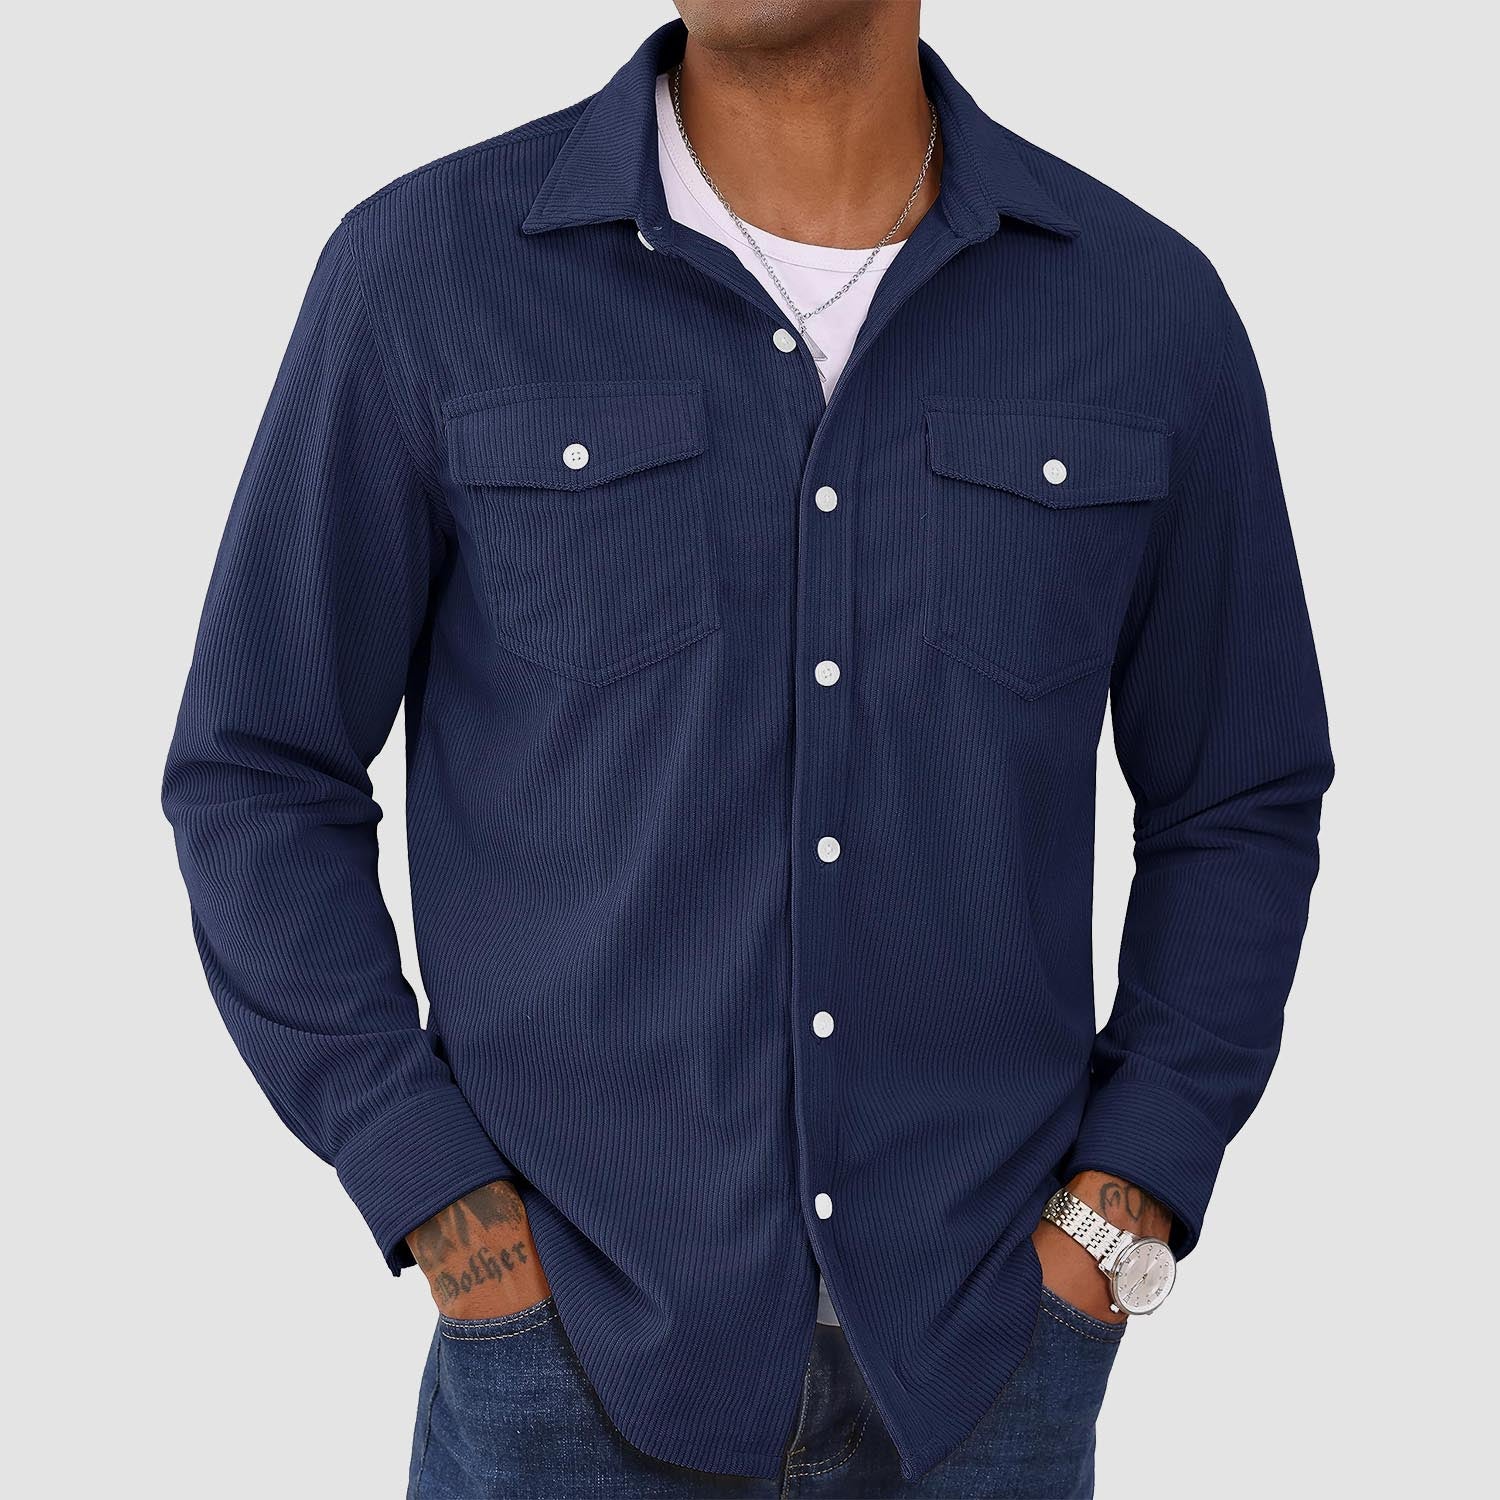 Men's Corduroy Shirt Long Sleeve Casual Shirt